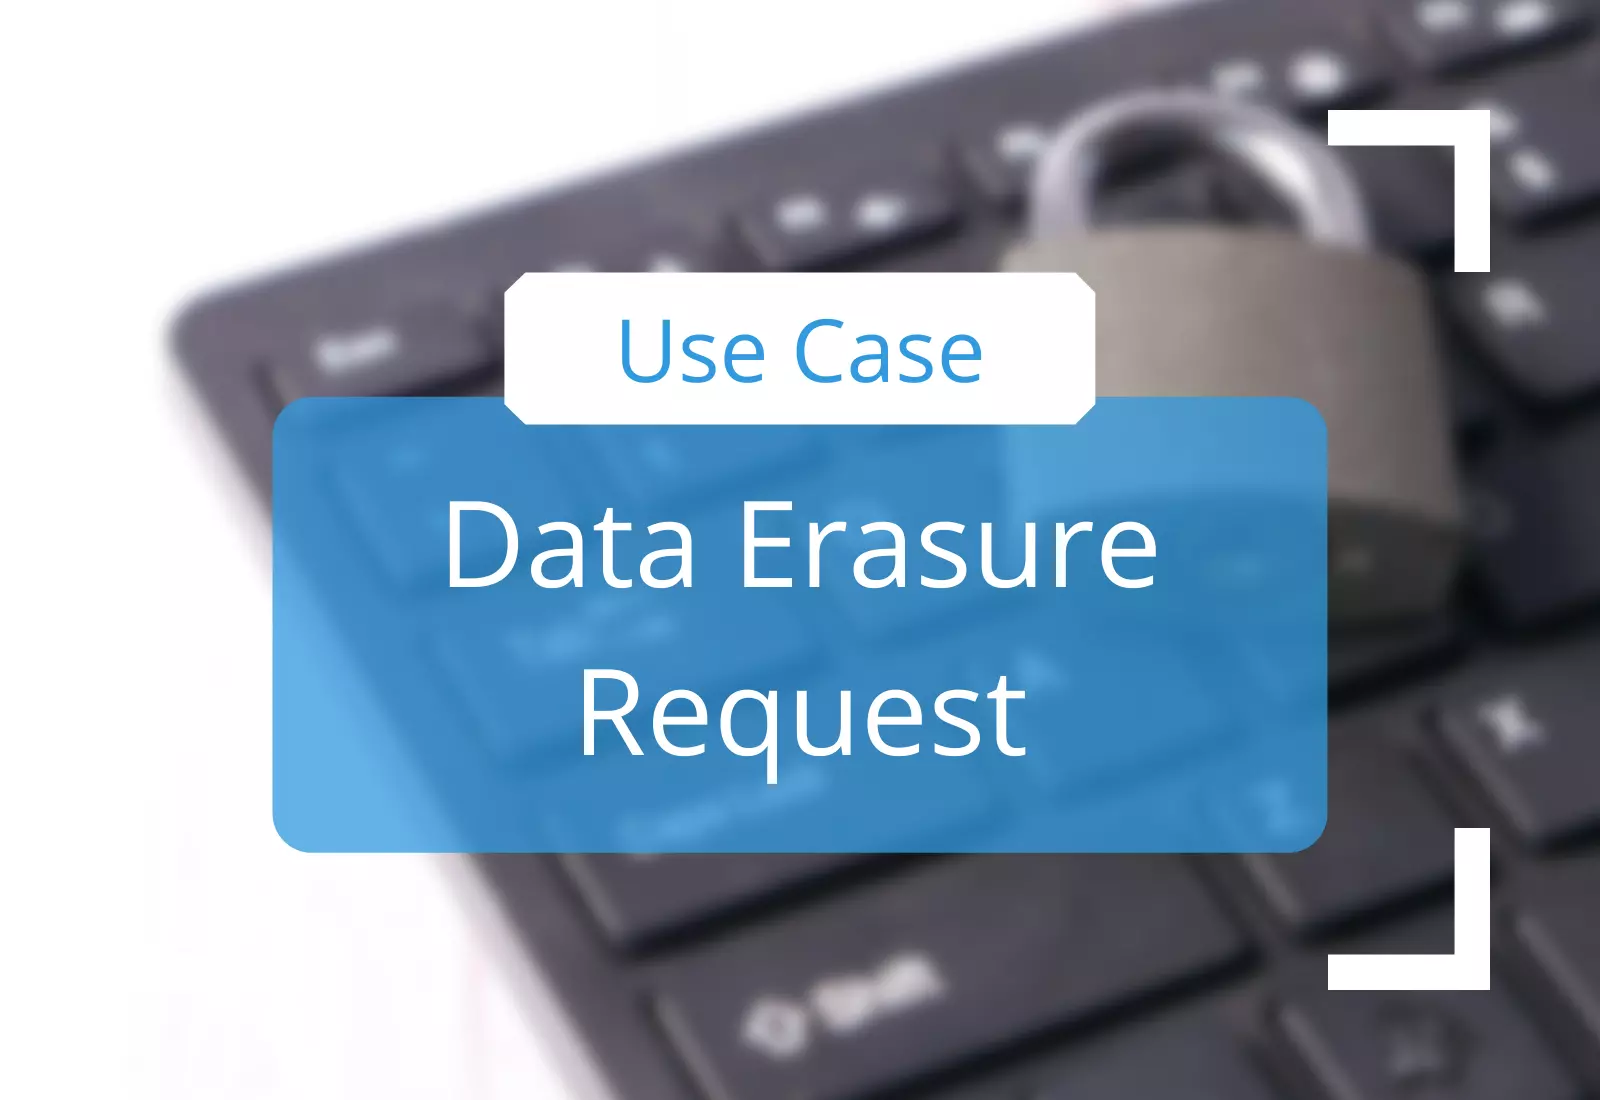 Data Erasure Request